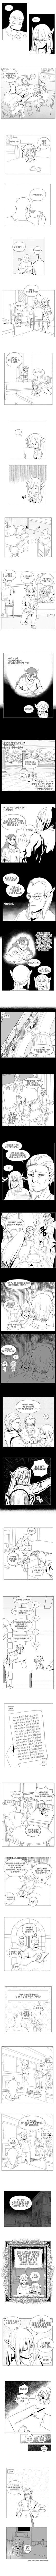 오크의 포로가 된 여사령관 만화 51화.manhwa